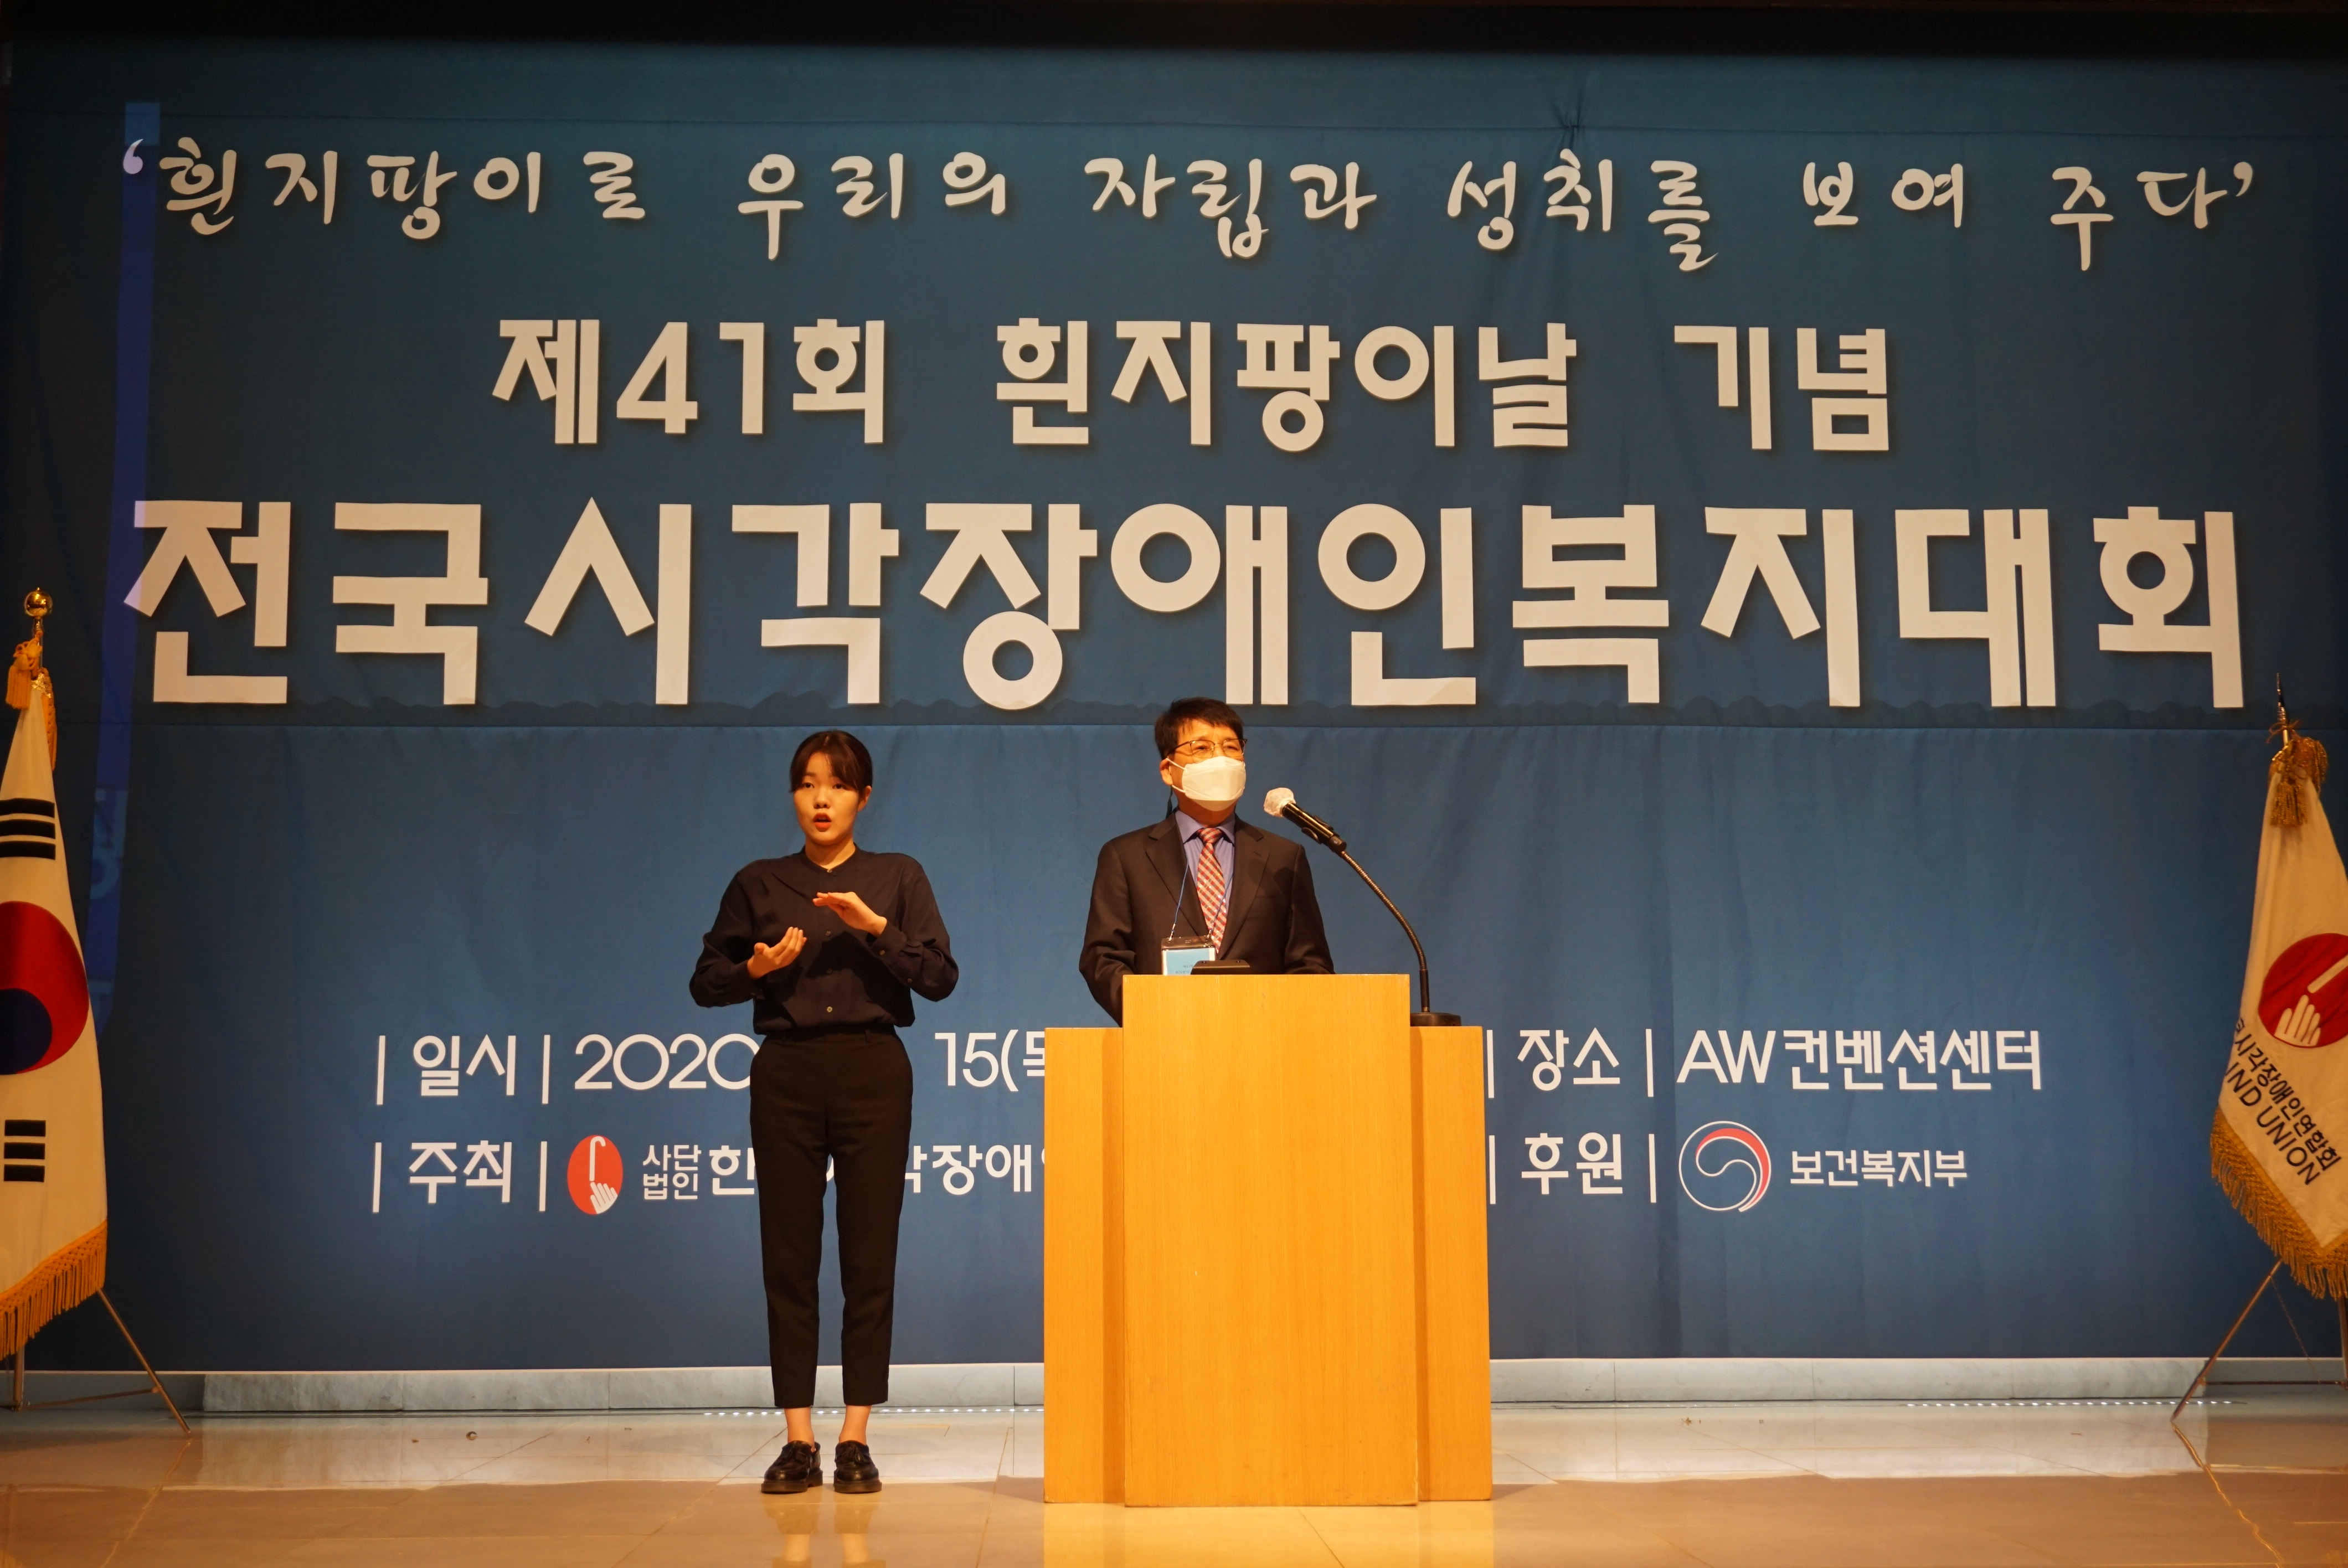 [보도자료] 제41회 흰지팡이 날 기념 행사, 서울 AW컨벤션센터에서 치뤄1